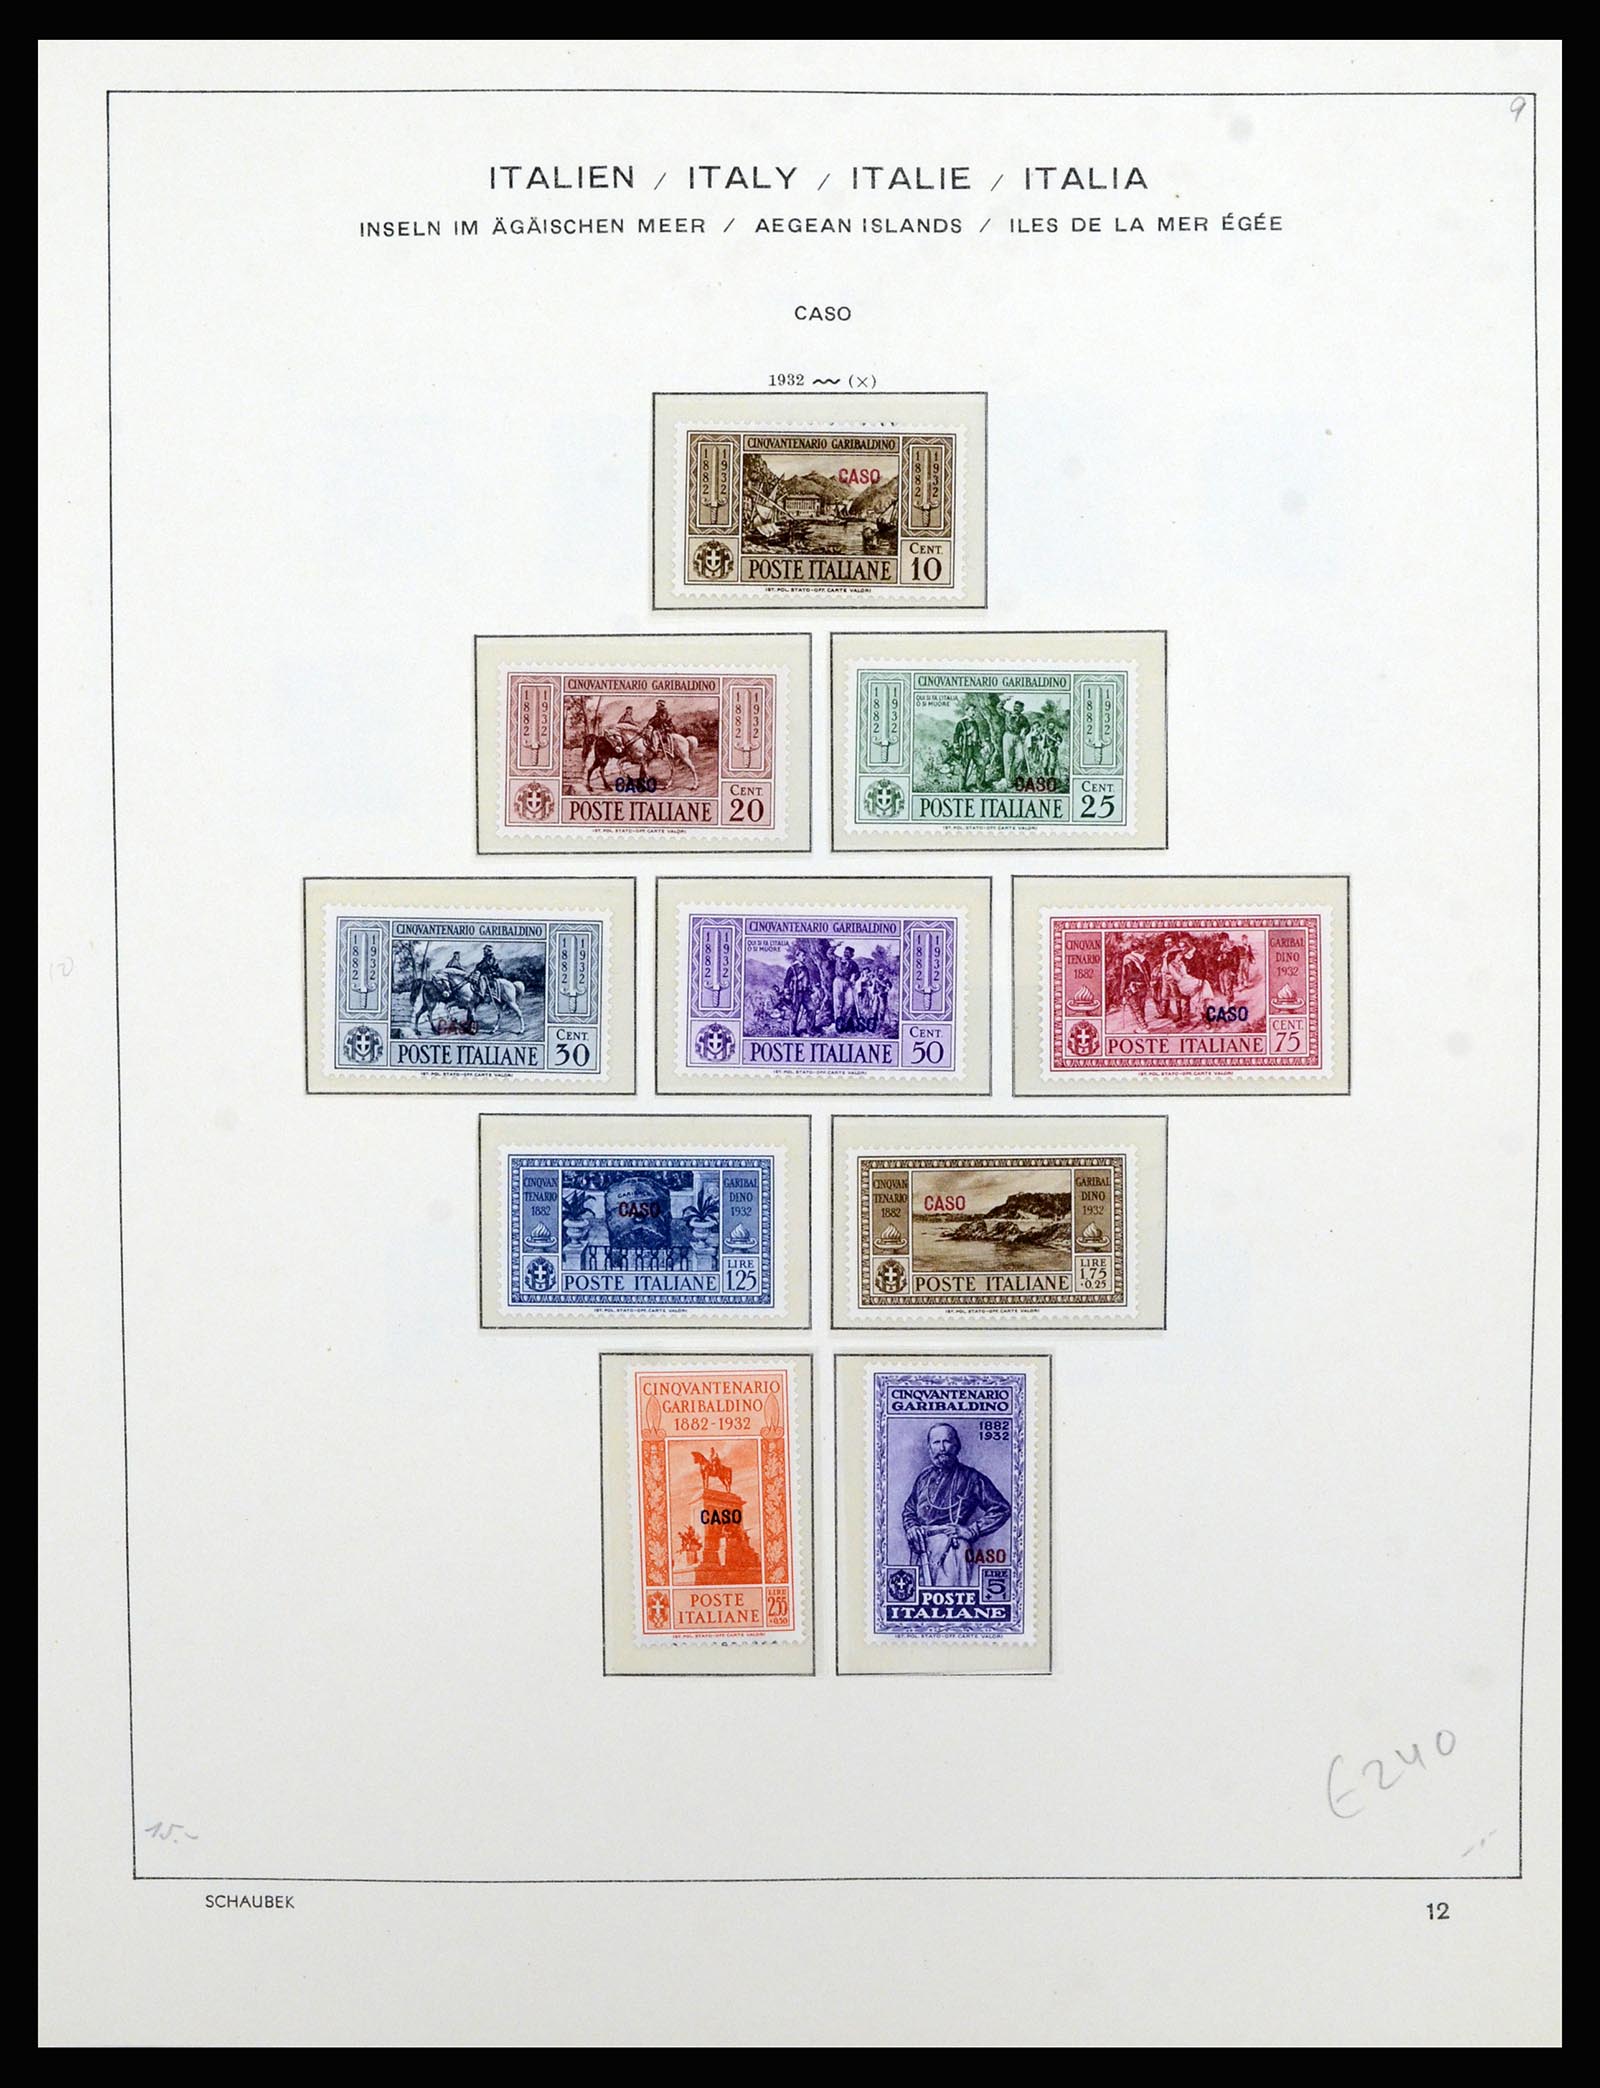 36577 038 - Stamp collection 36577 Italiaanse gebieden 1870-1940.